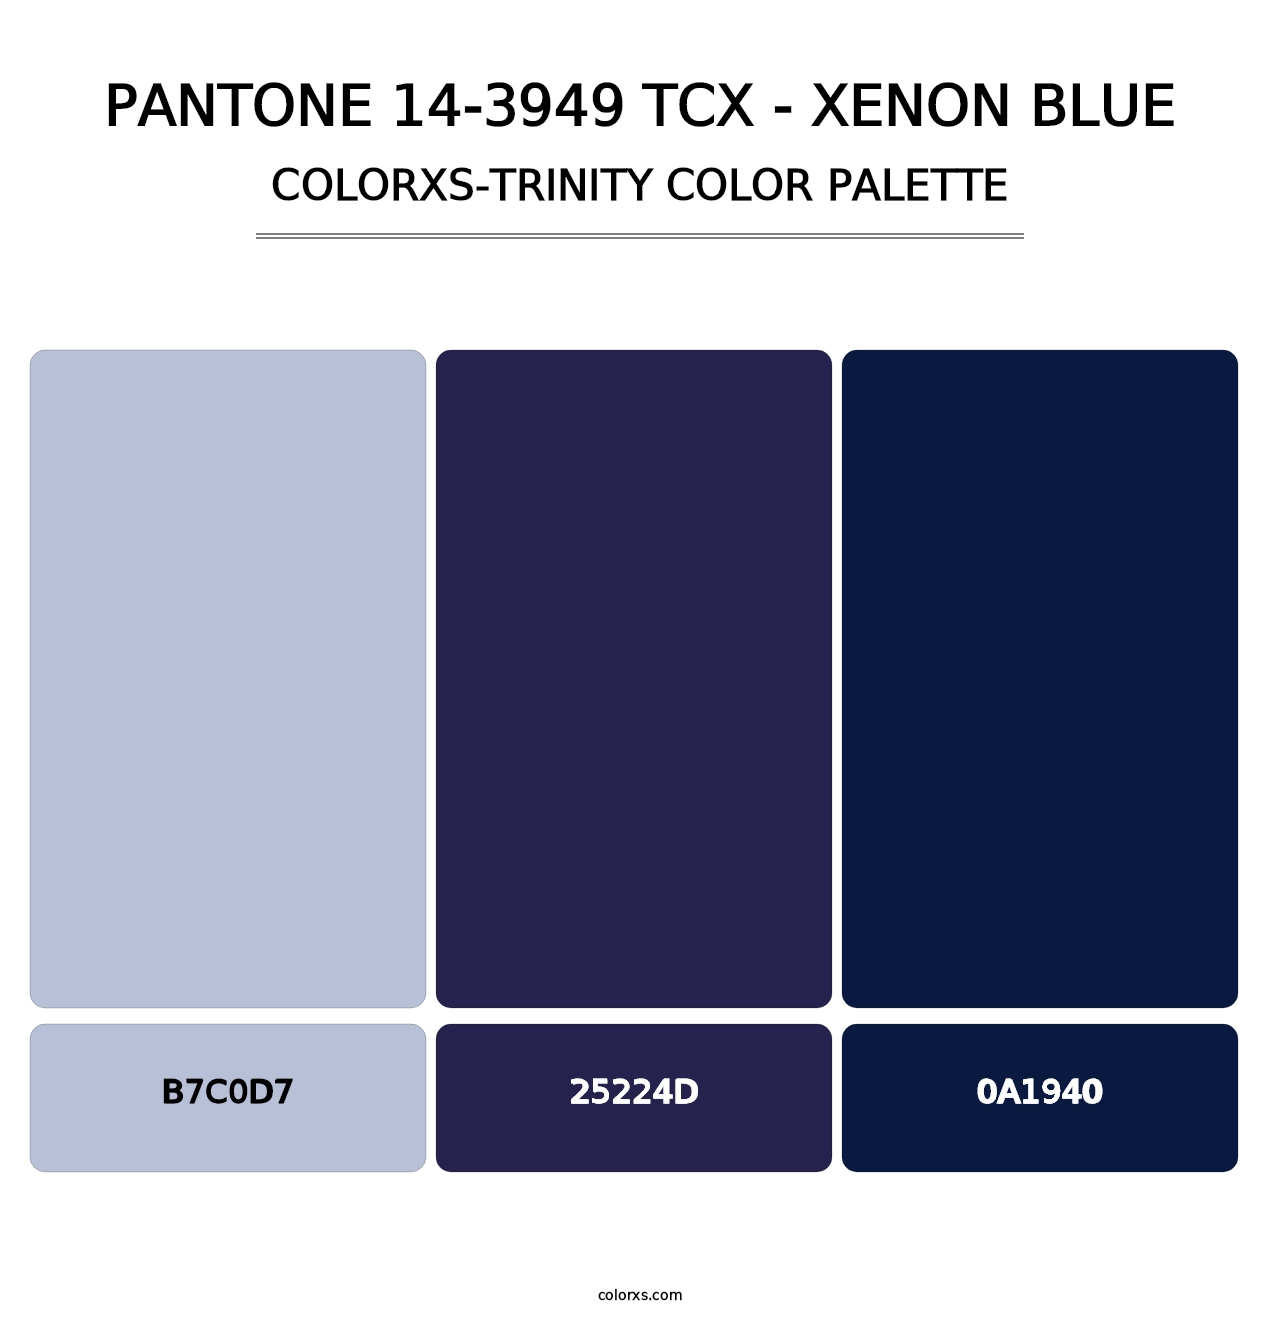 PANTONE 14-3949 TCX - Xenon Blue - Colorxs Trinity Palette